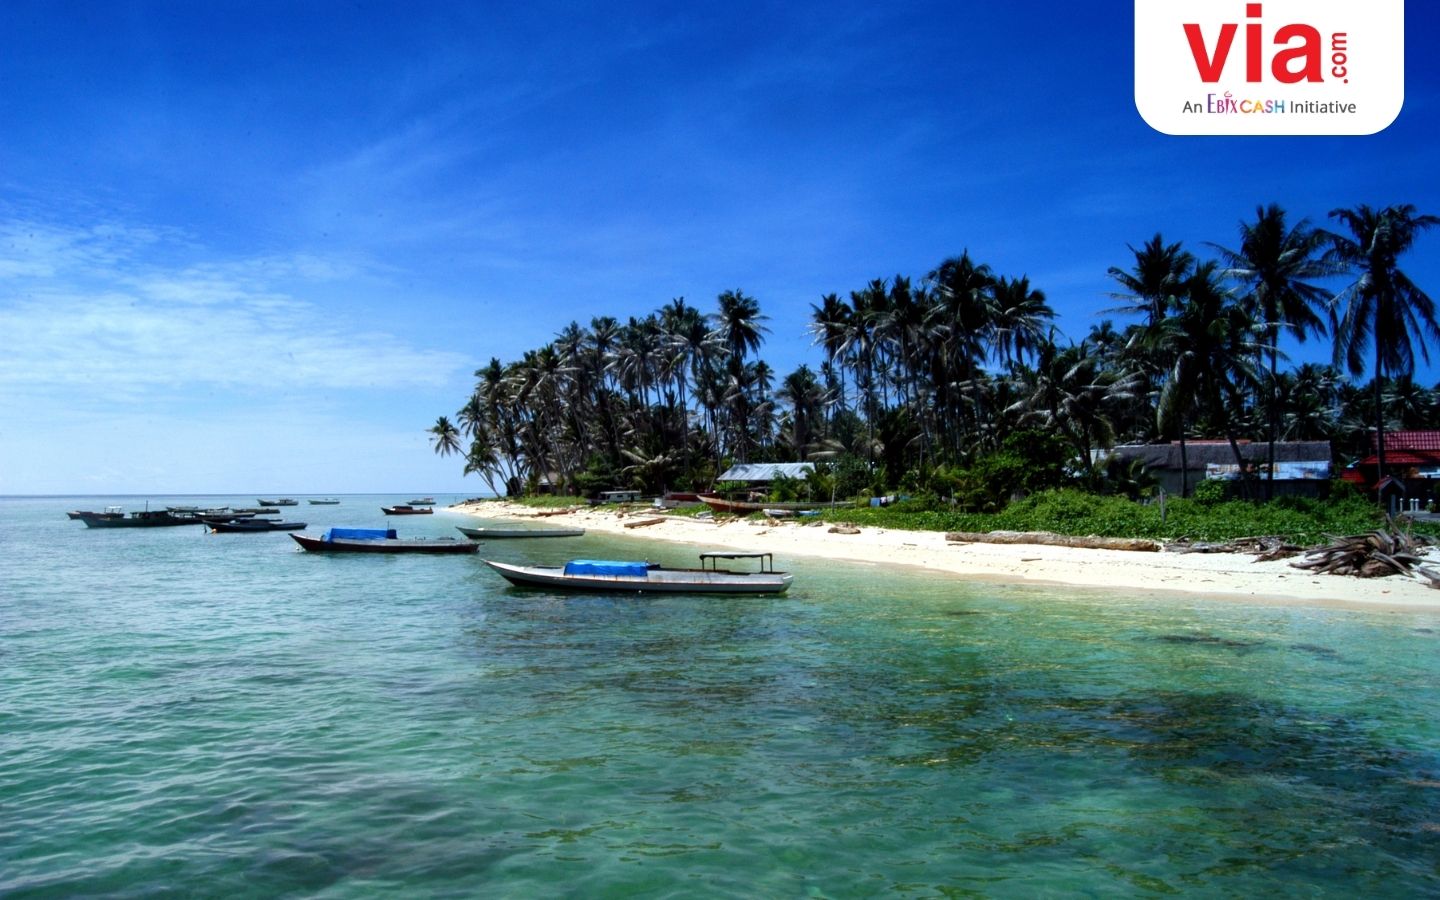 Jelajah Keindahan Laut Indonesia Bersama PELNI: 5 Destinasi Wisata Bahari yang Seru